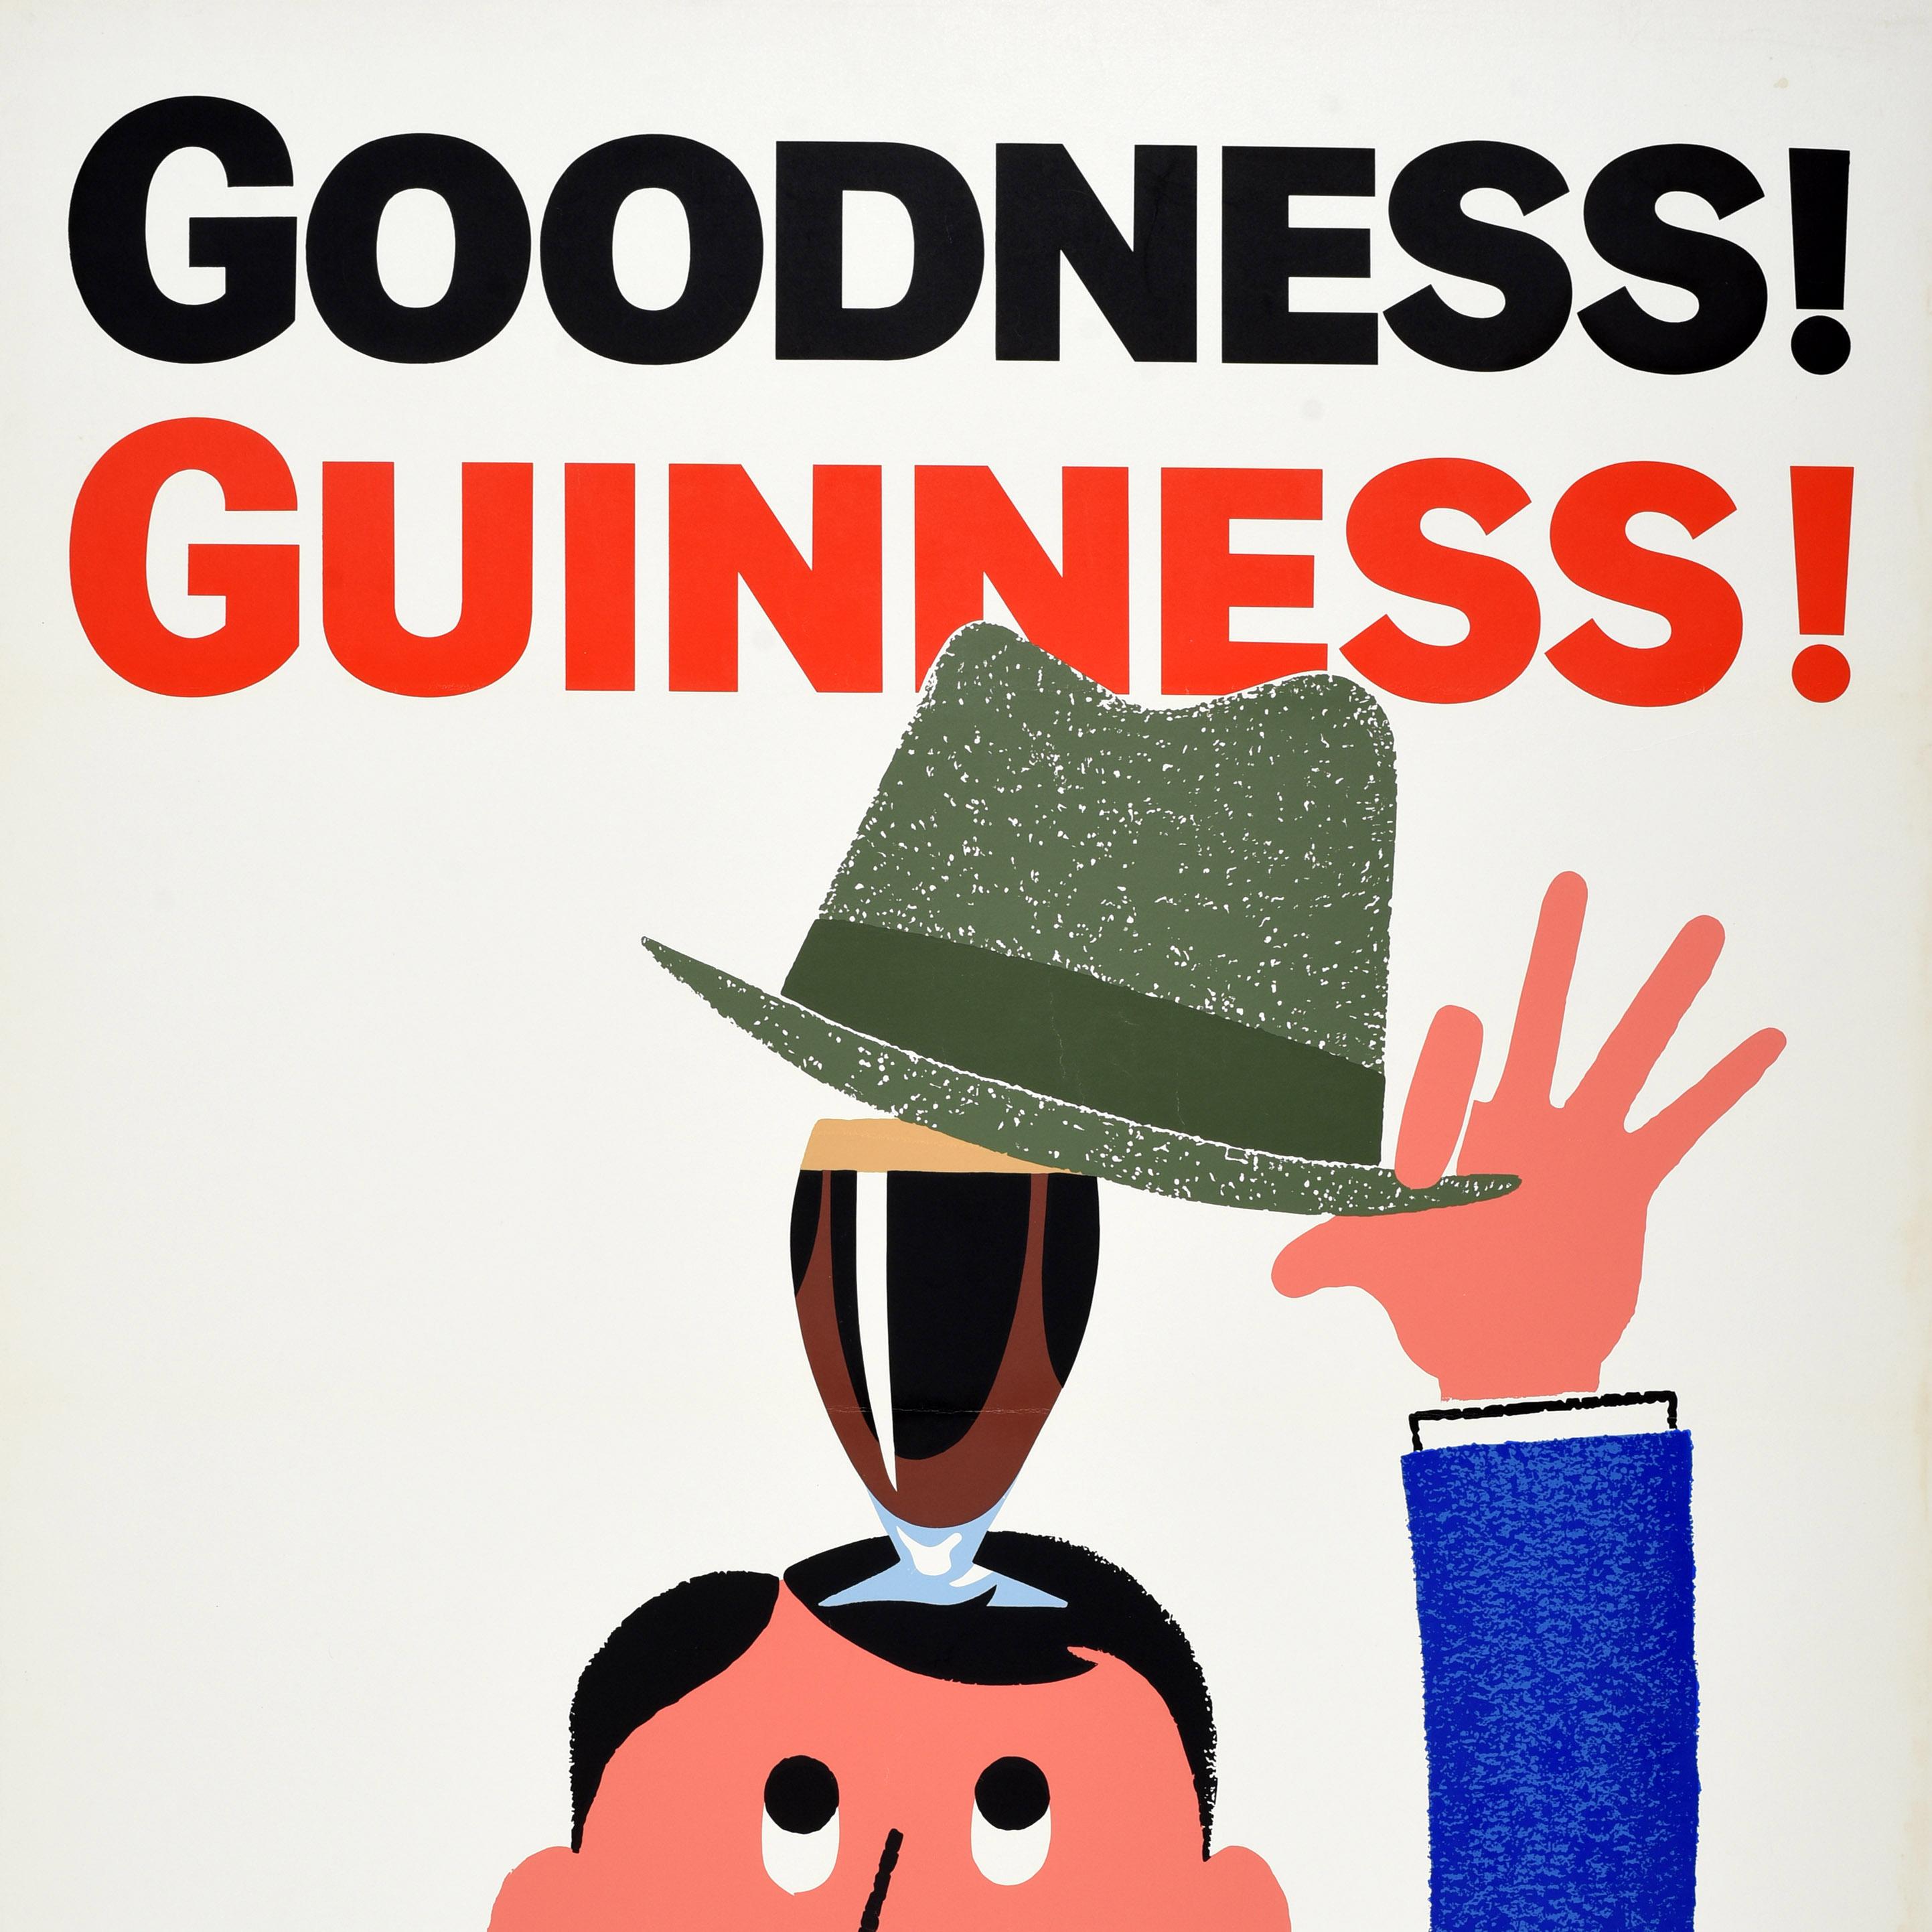 Affiche publicitaire vintage originale pour la boisson emblématique qu'est la bière stout irlandaise Guinness - Goodness ! Guinness ! - avec un design amusant représentant un homme portant un costume bleu et une cravate rouge qui soulève son chapeau